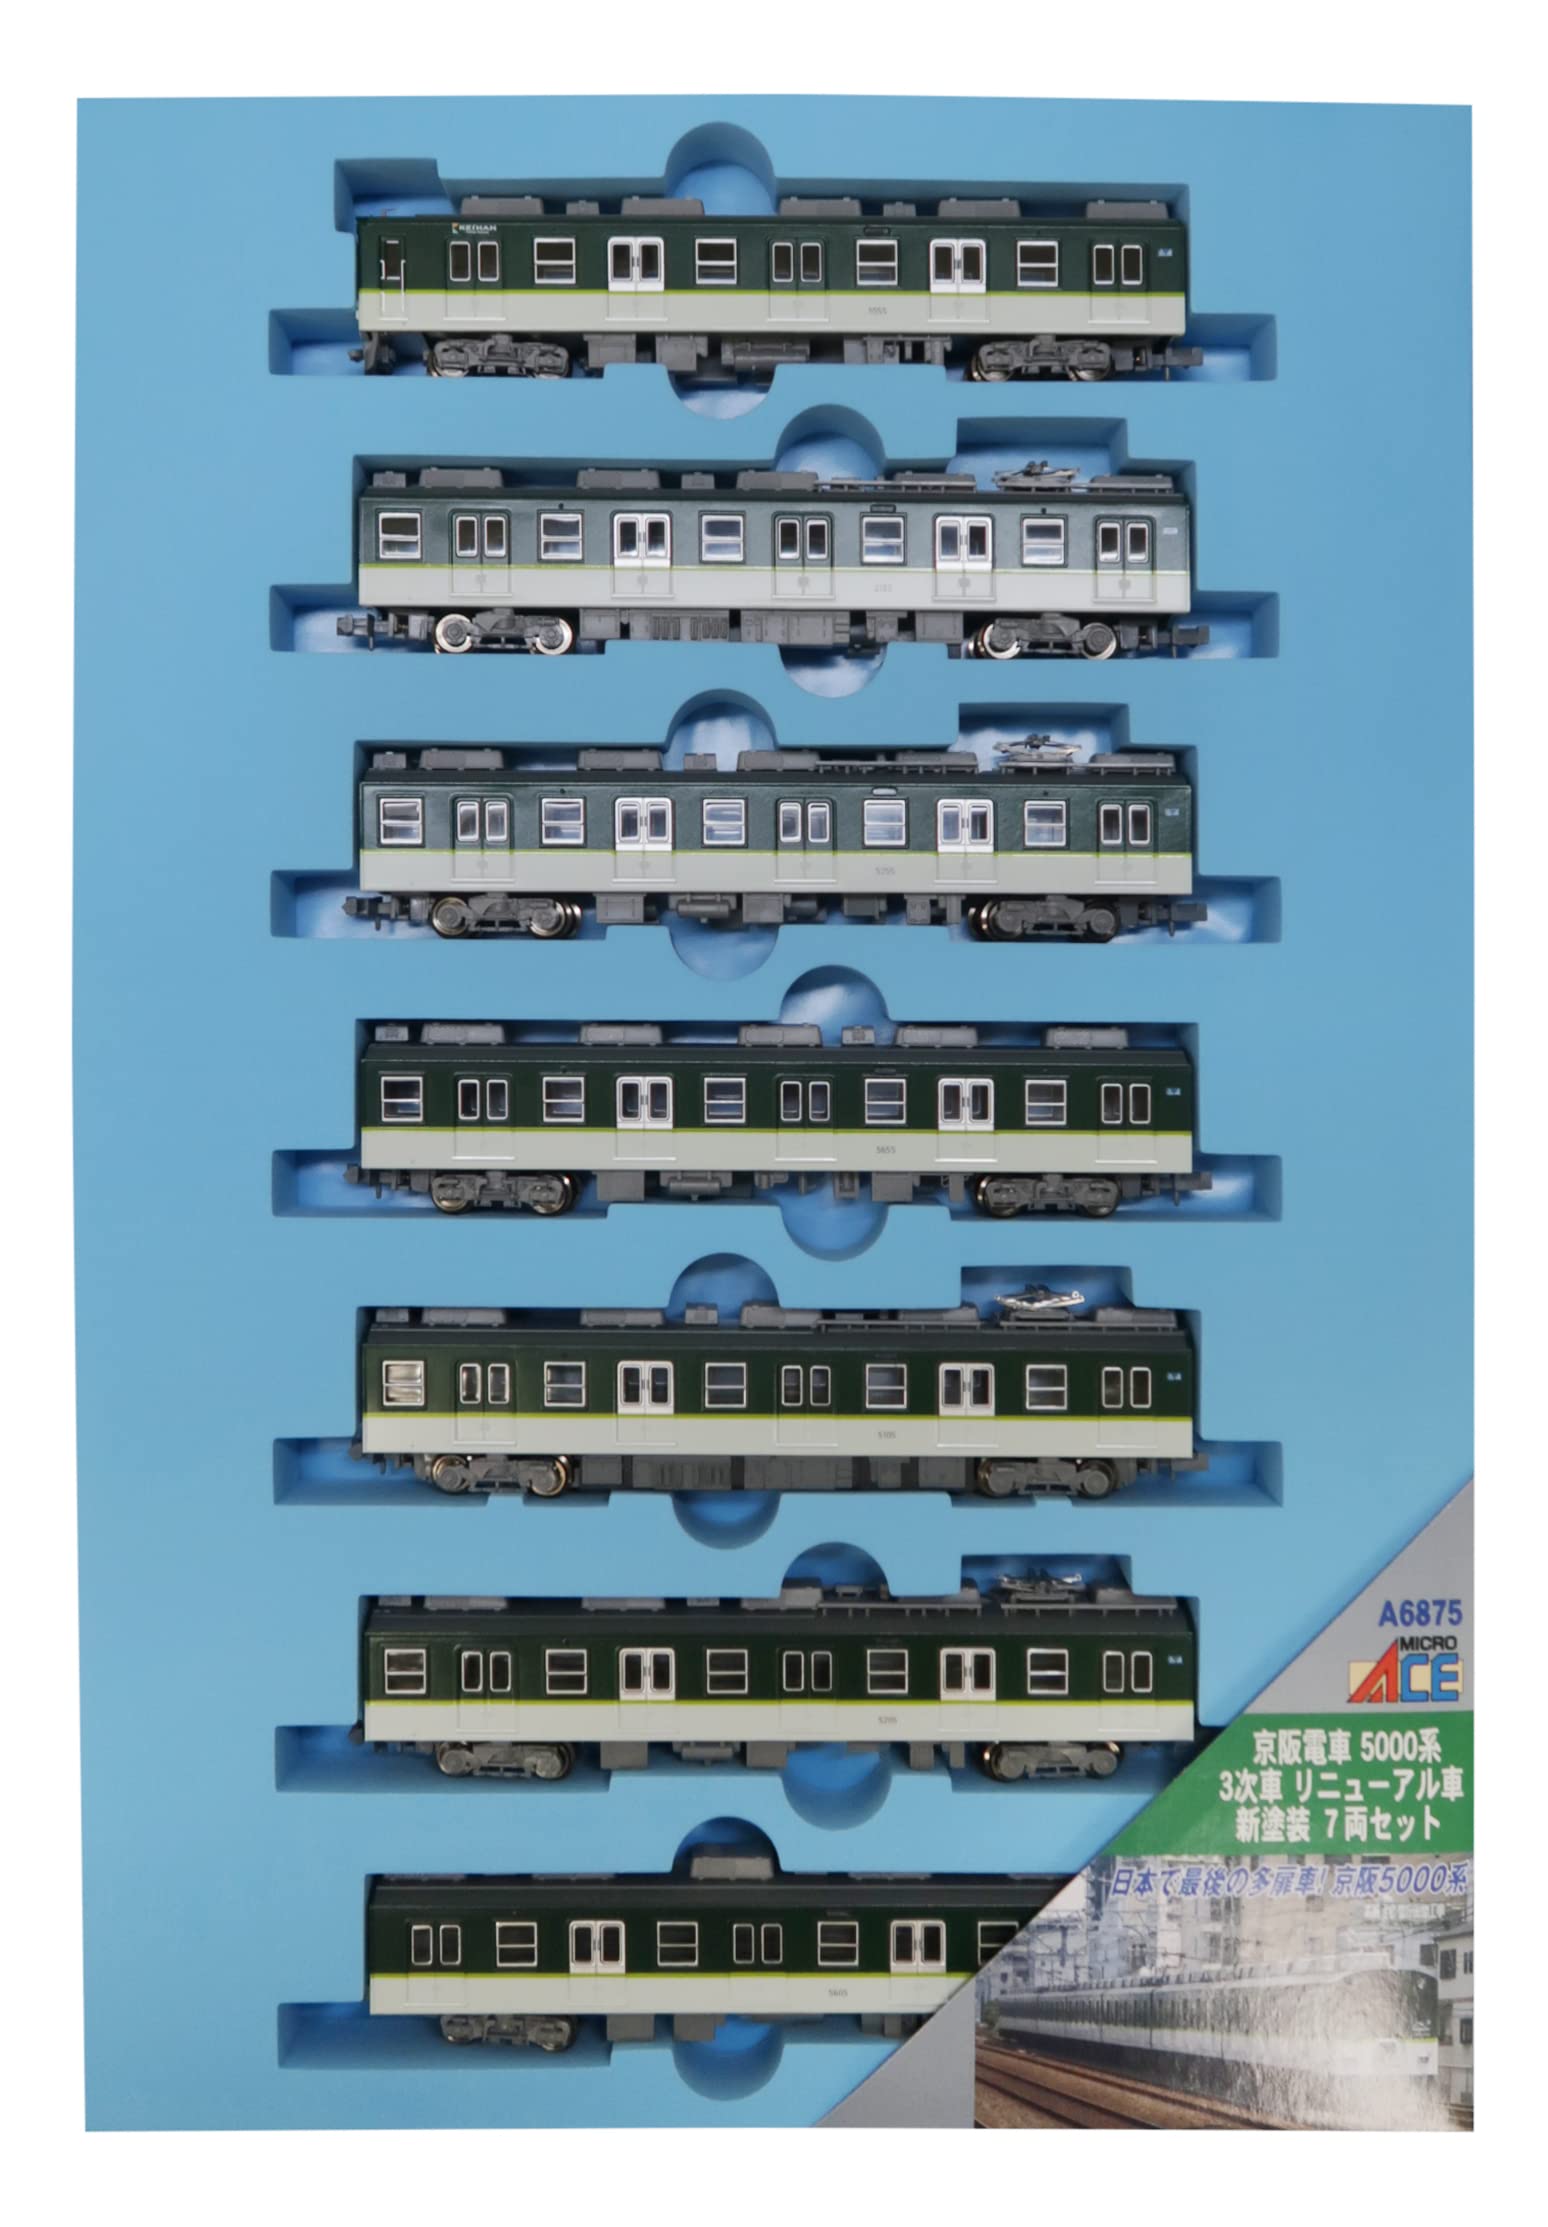 マイクロエース Nゲージ 京阪電車5000系 3次車 リニューアル車 新塗装 7両セット A6875 鉄道模型 電車